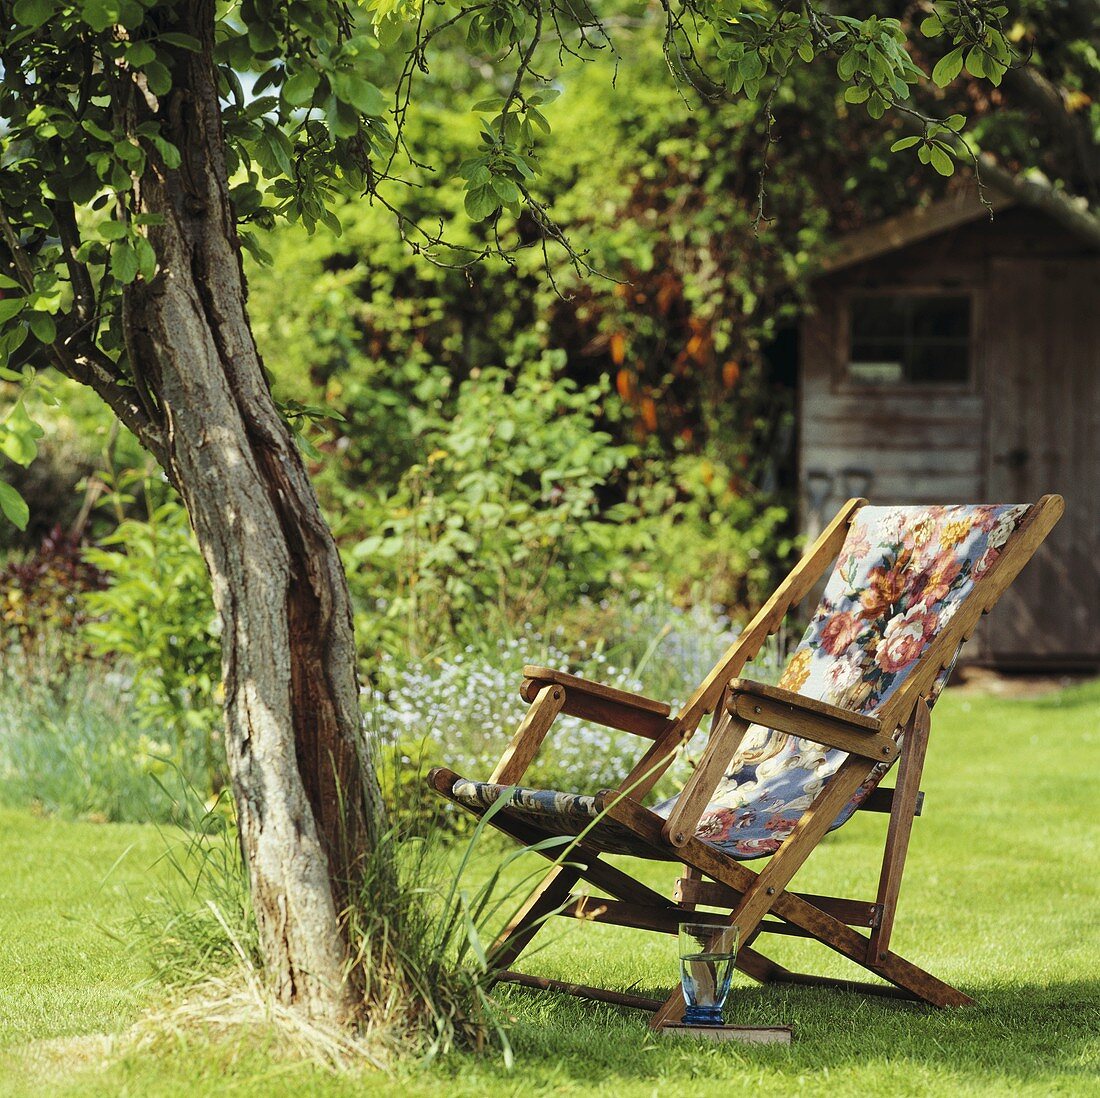 Holzliegestuhl mit blumig gemustertem Stoffbezug unter Baum in einem Sommergarten